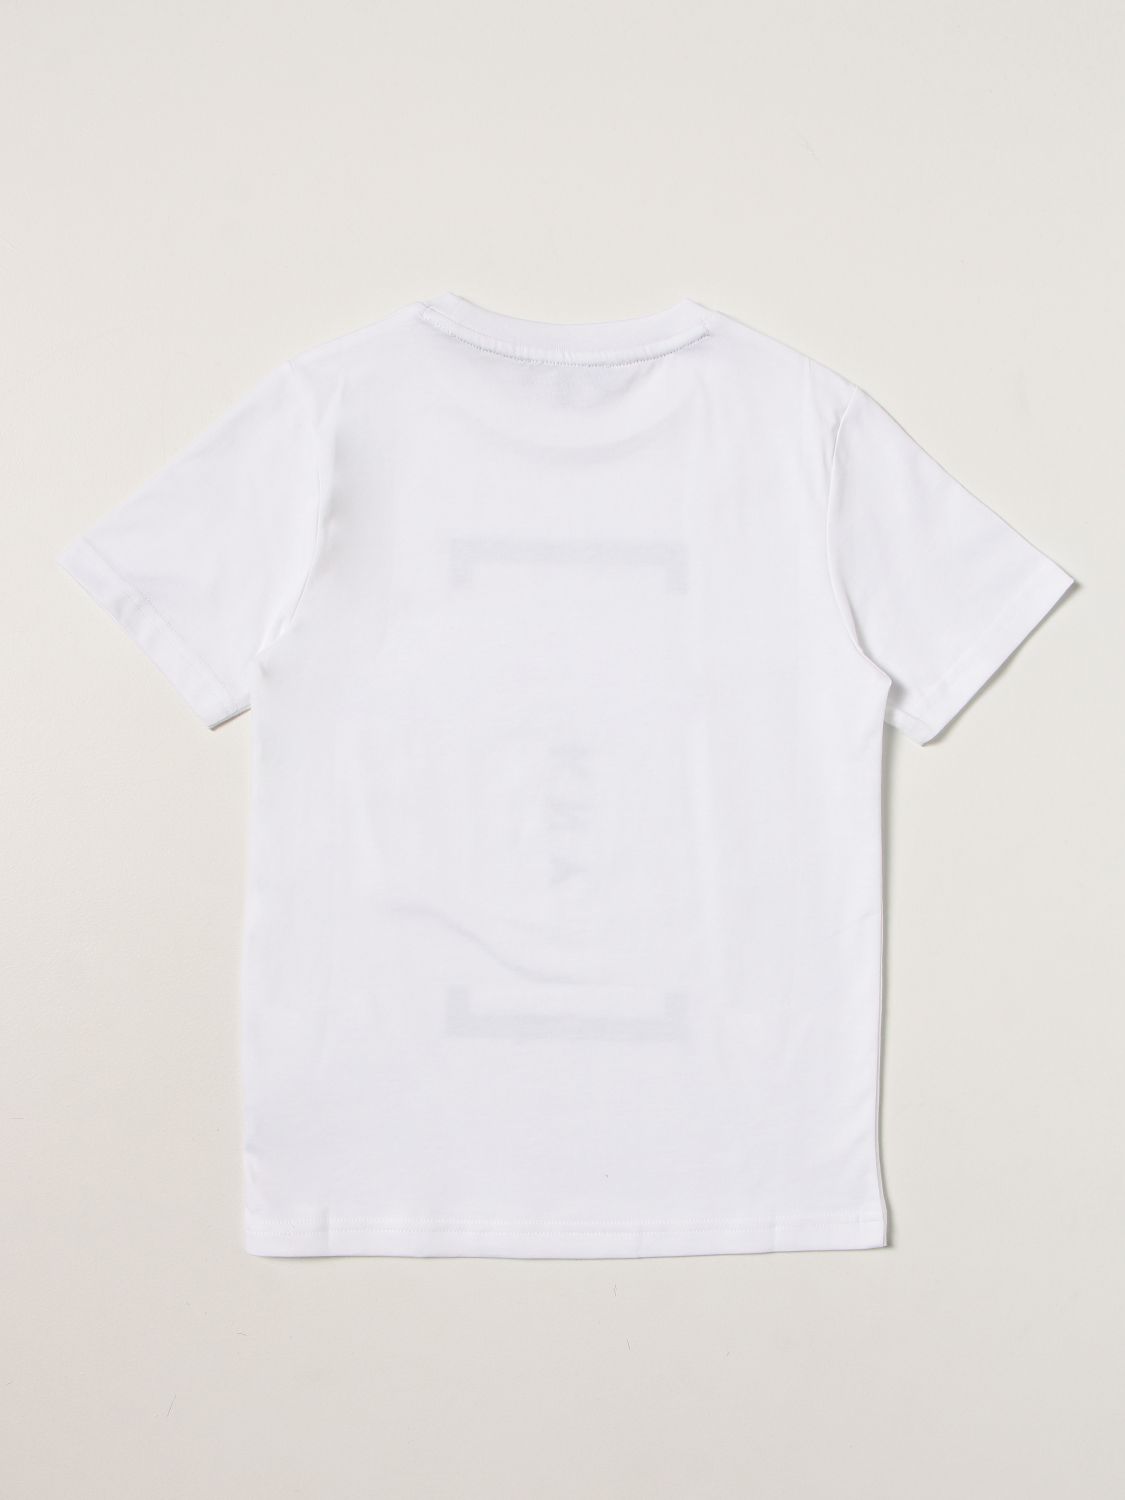 T恤 Dkny: T恤 儿童 Dkny 白色 2